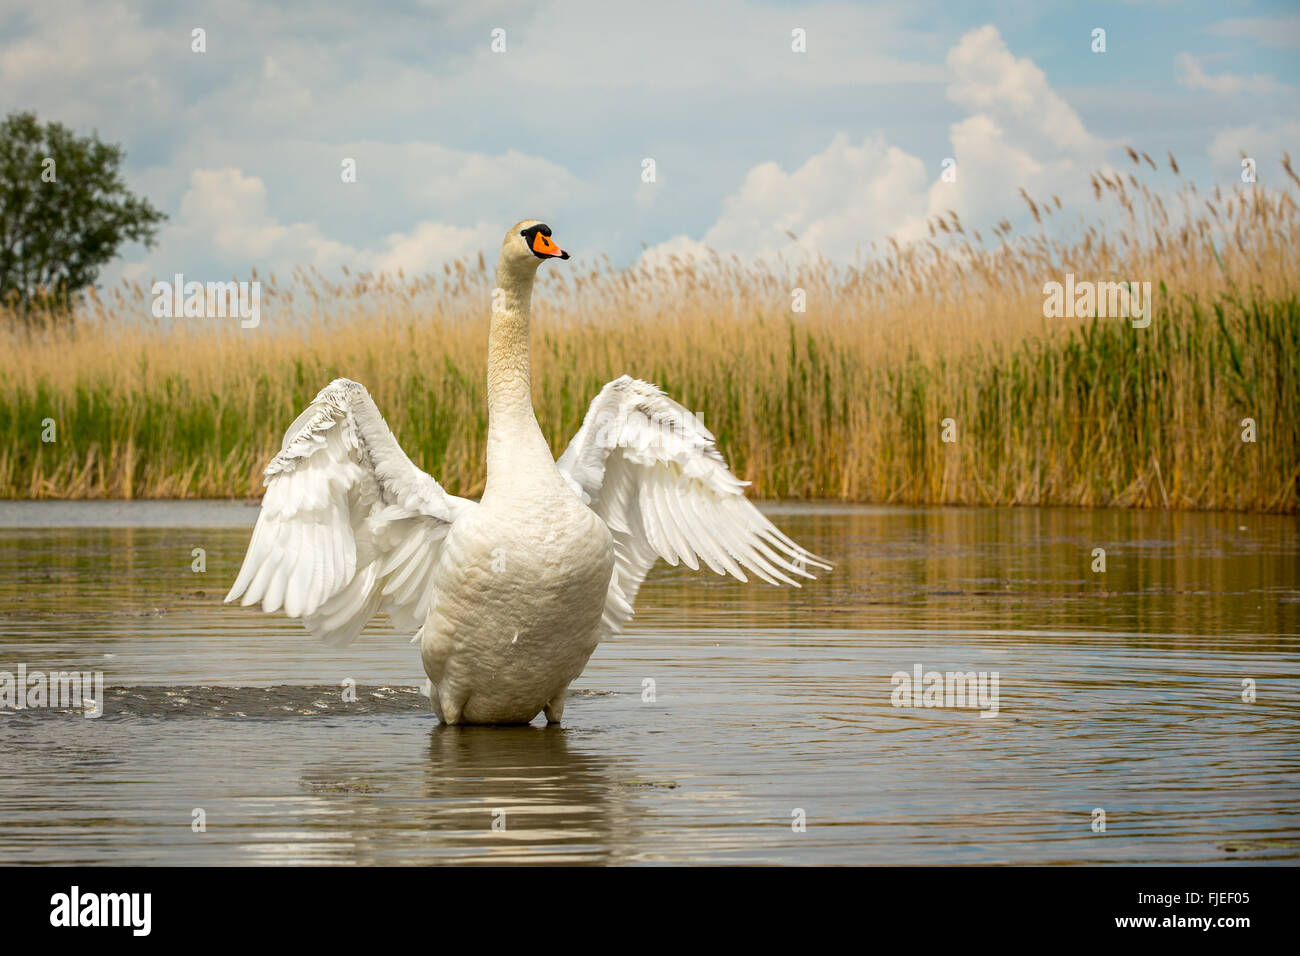 Vista de bajo nivel del Cisne (Cygnus olor) estirando las alas en un estanque rodeado de juncos Foto de stock